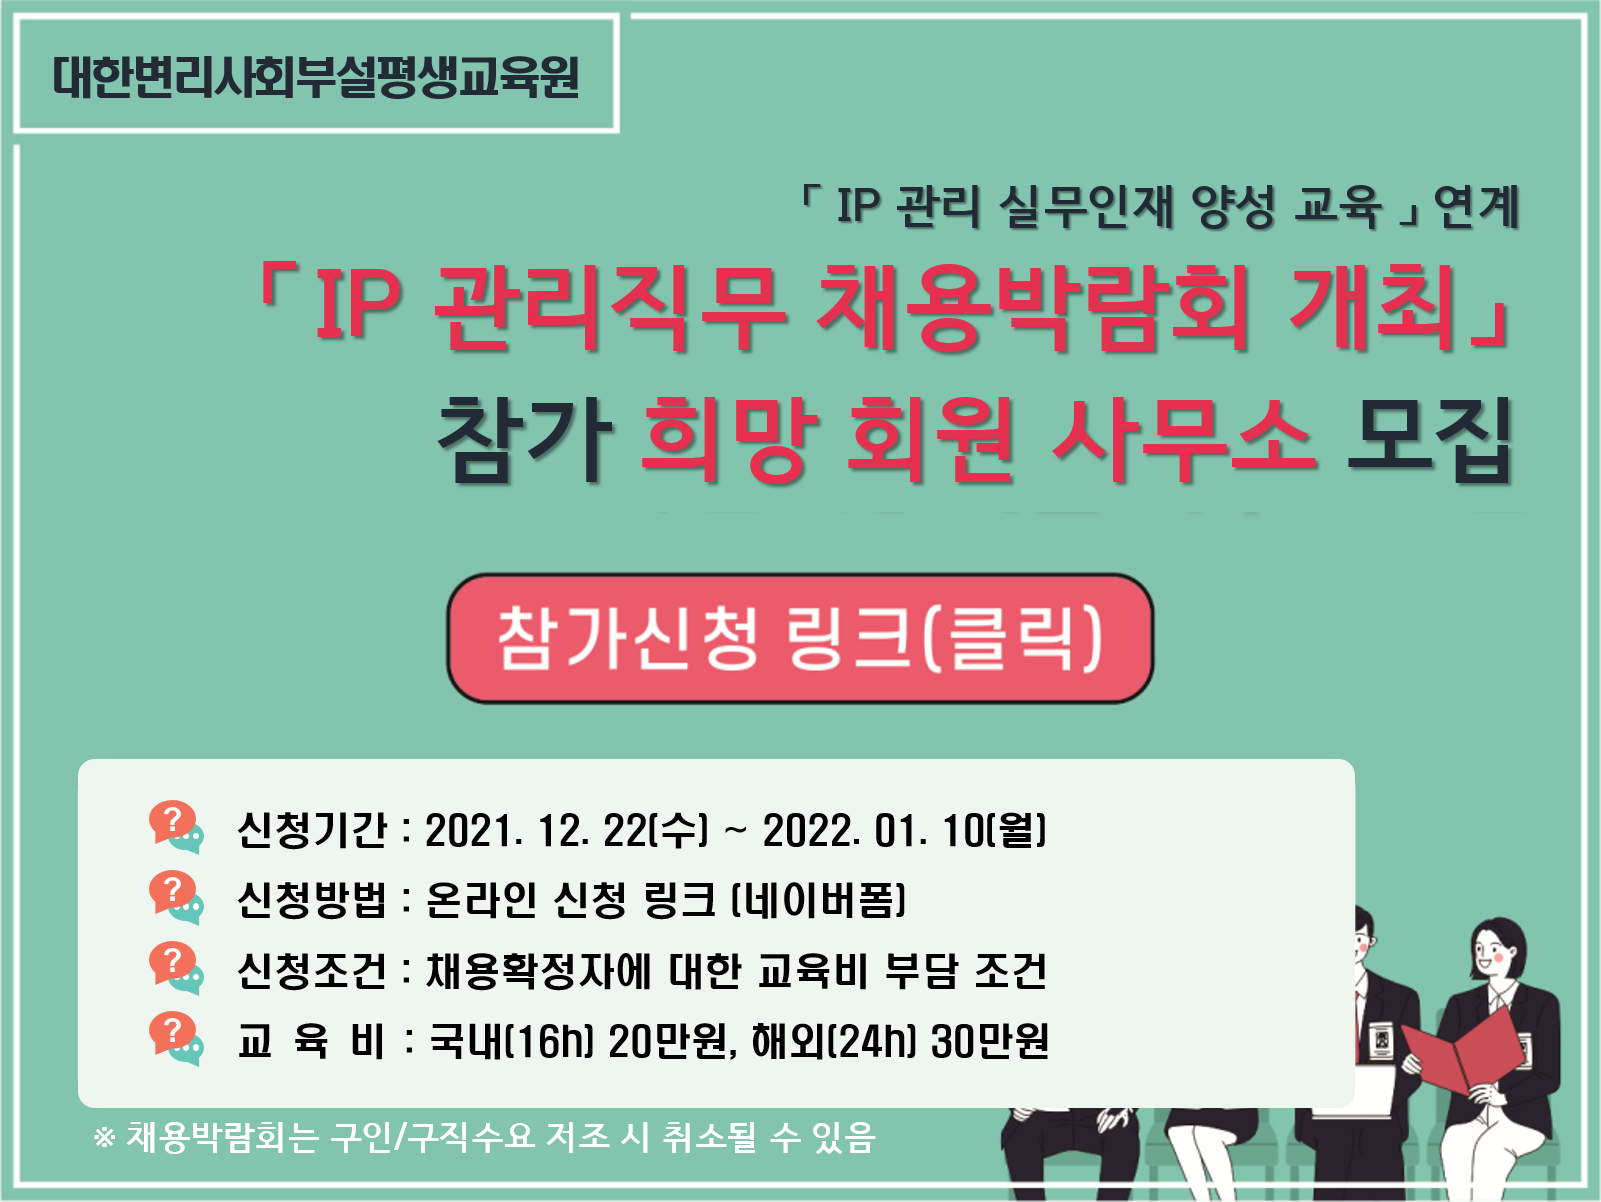 「IP 관리직무 채용박람회 개최」참가희망 사무소 모집